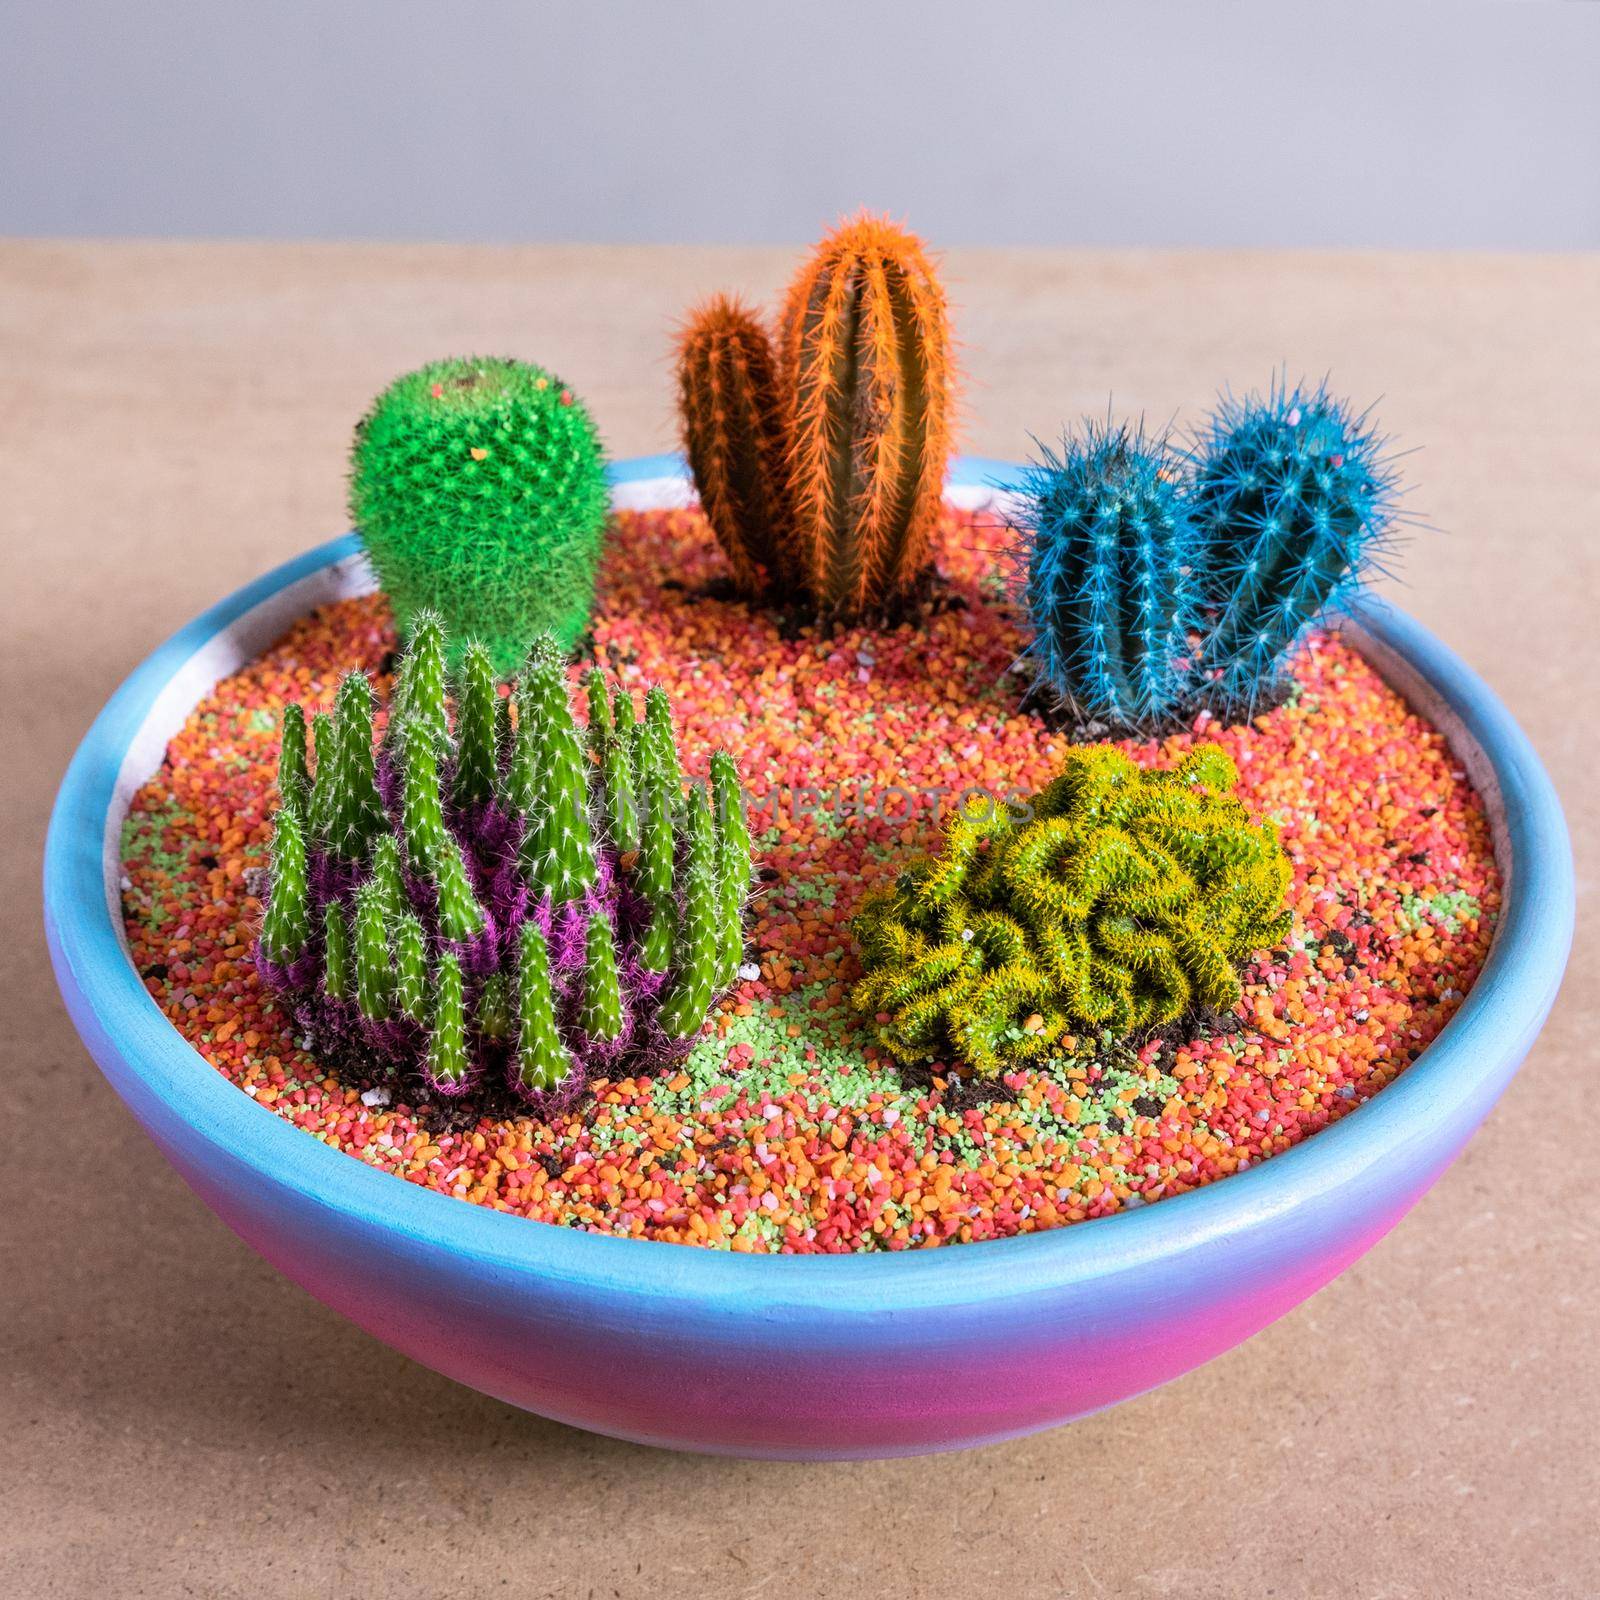 Terrarium, sand, rock, succulent, painted cactus in the rainbow colorful pot